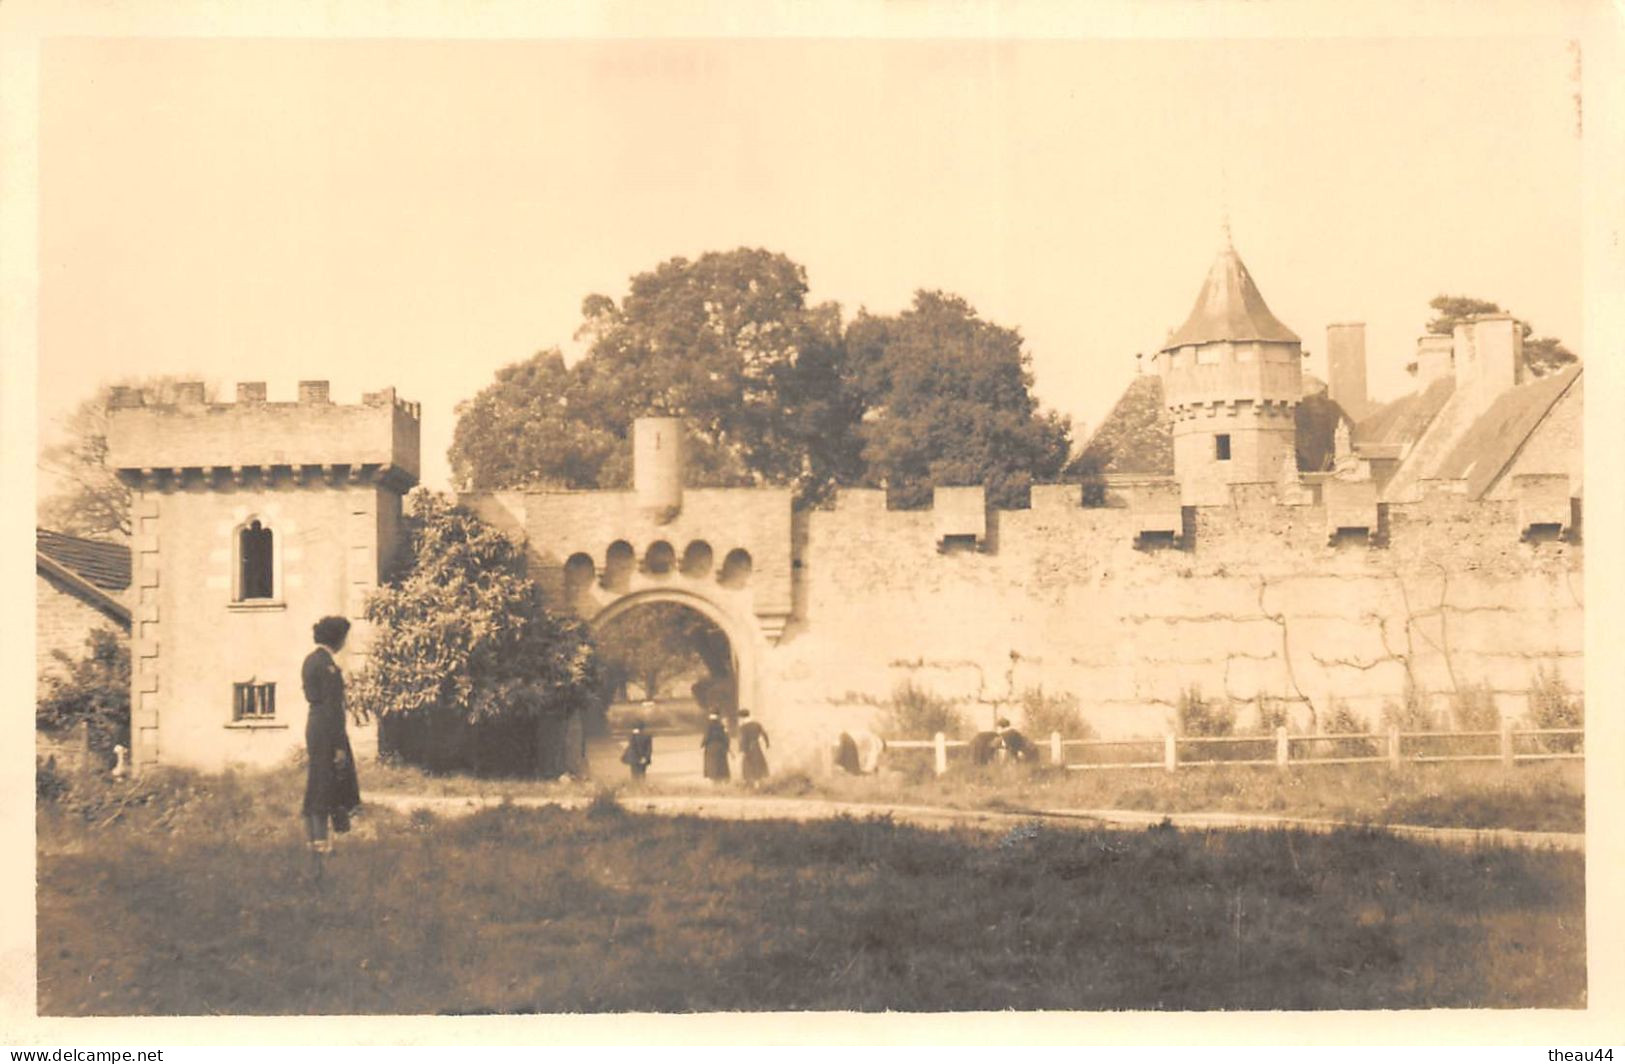 ¤¤  -    LA BAULE   -  Carte-Photo Du Chateau De LESNERAC    -  ¤¤ - La Baule-Escoublac